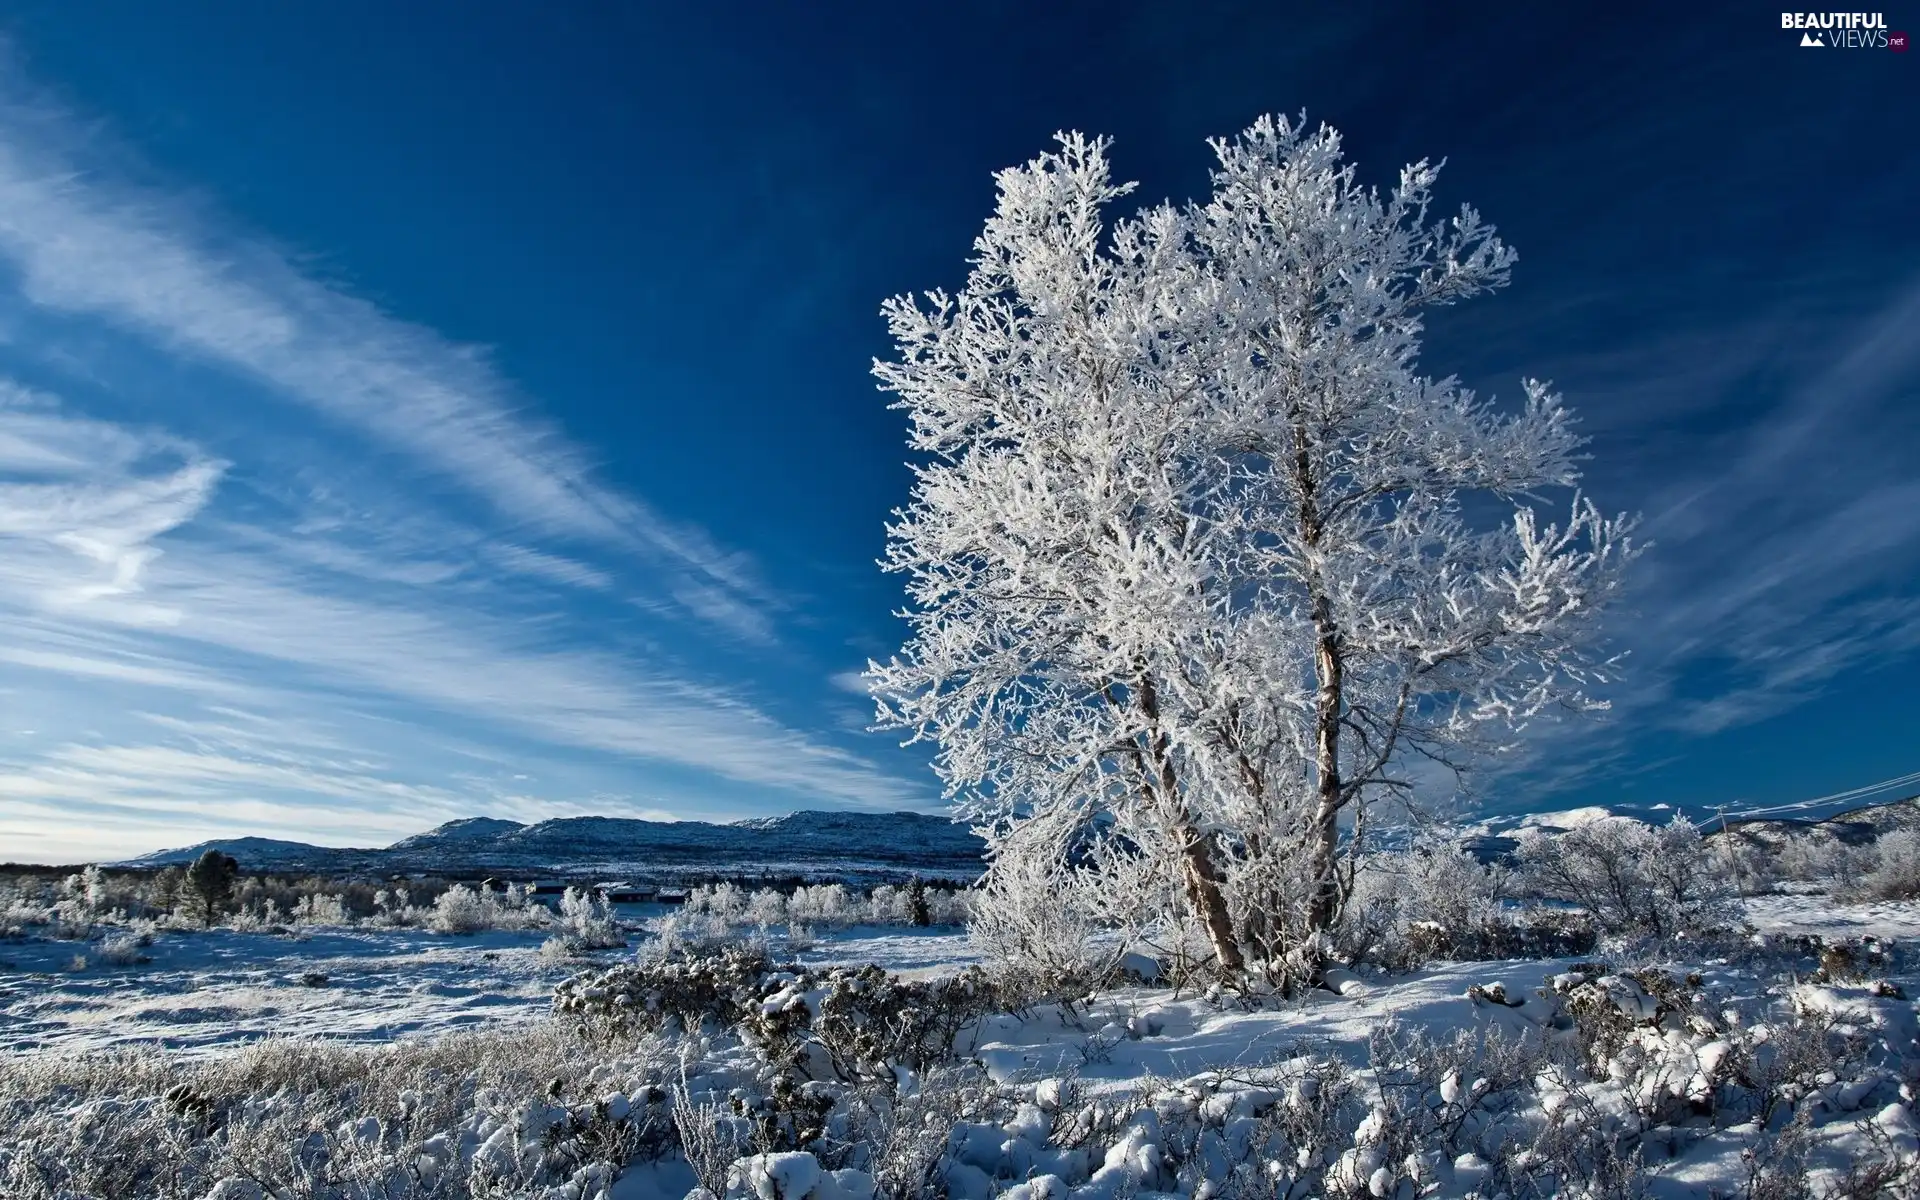 winter, frosty, trees, Sky